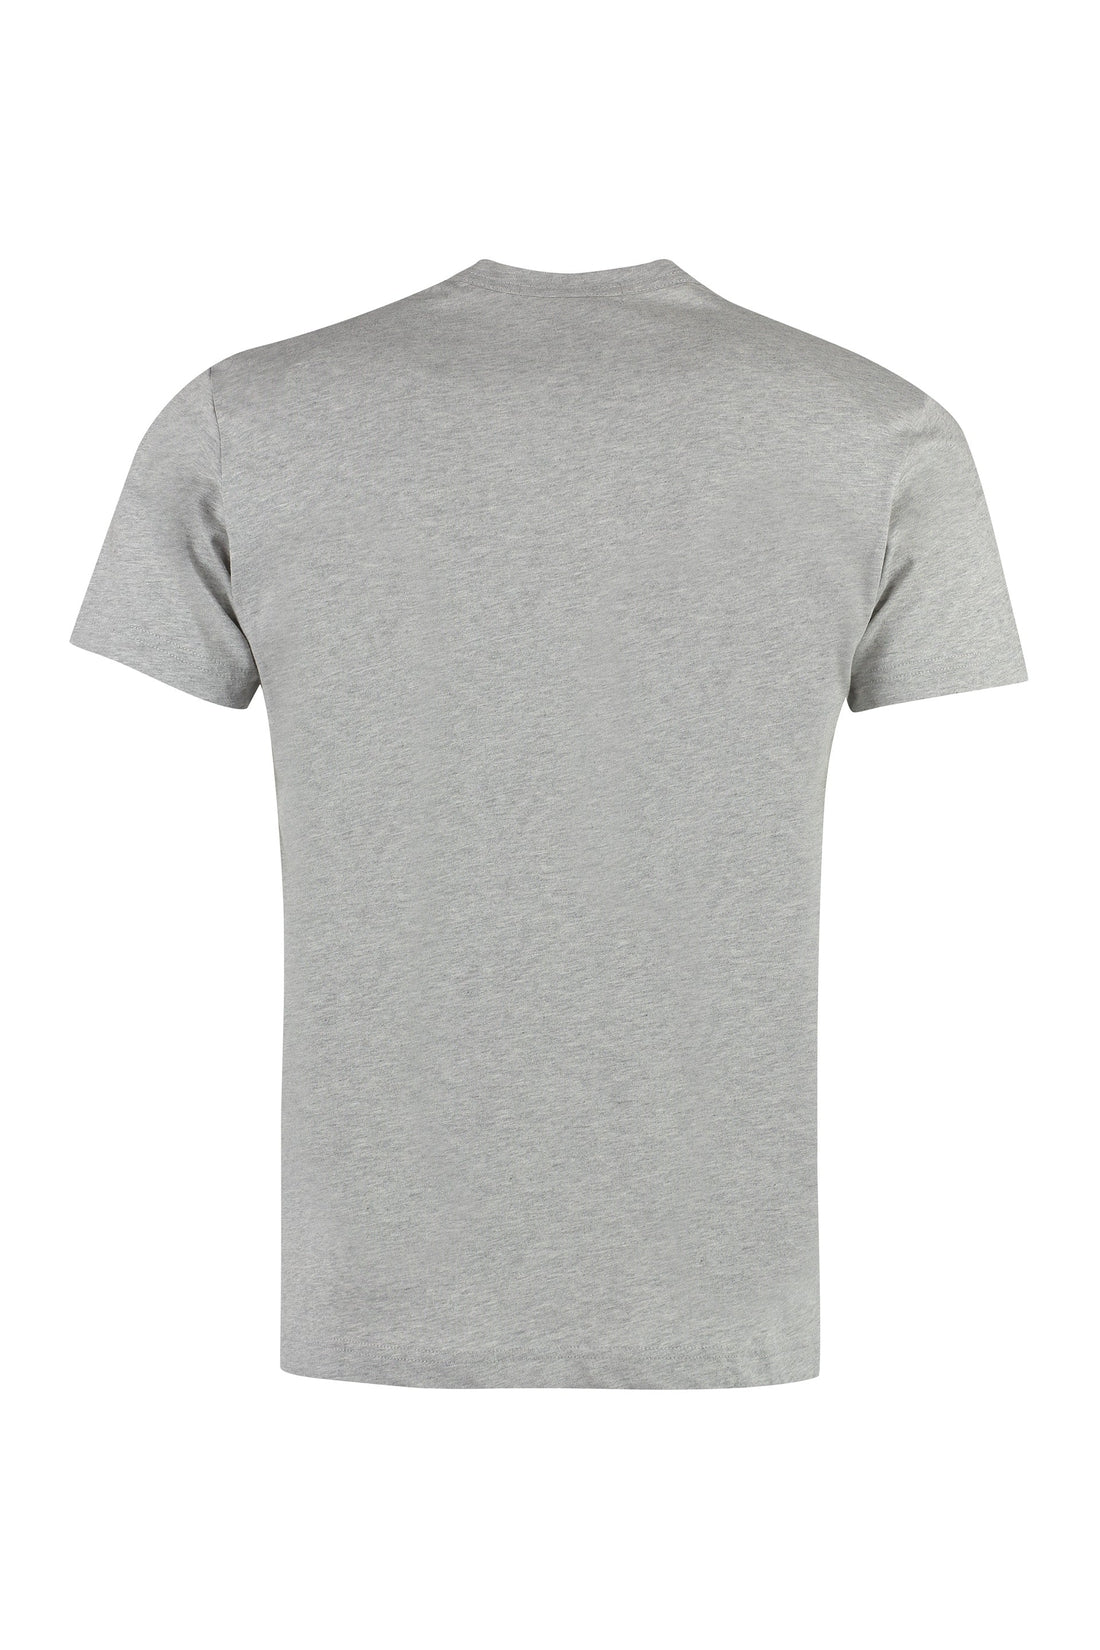 Comme des Garçons SHIRT-OUTLET-SALE-Printed cotton T-shirt-ARCHIVIST